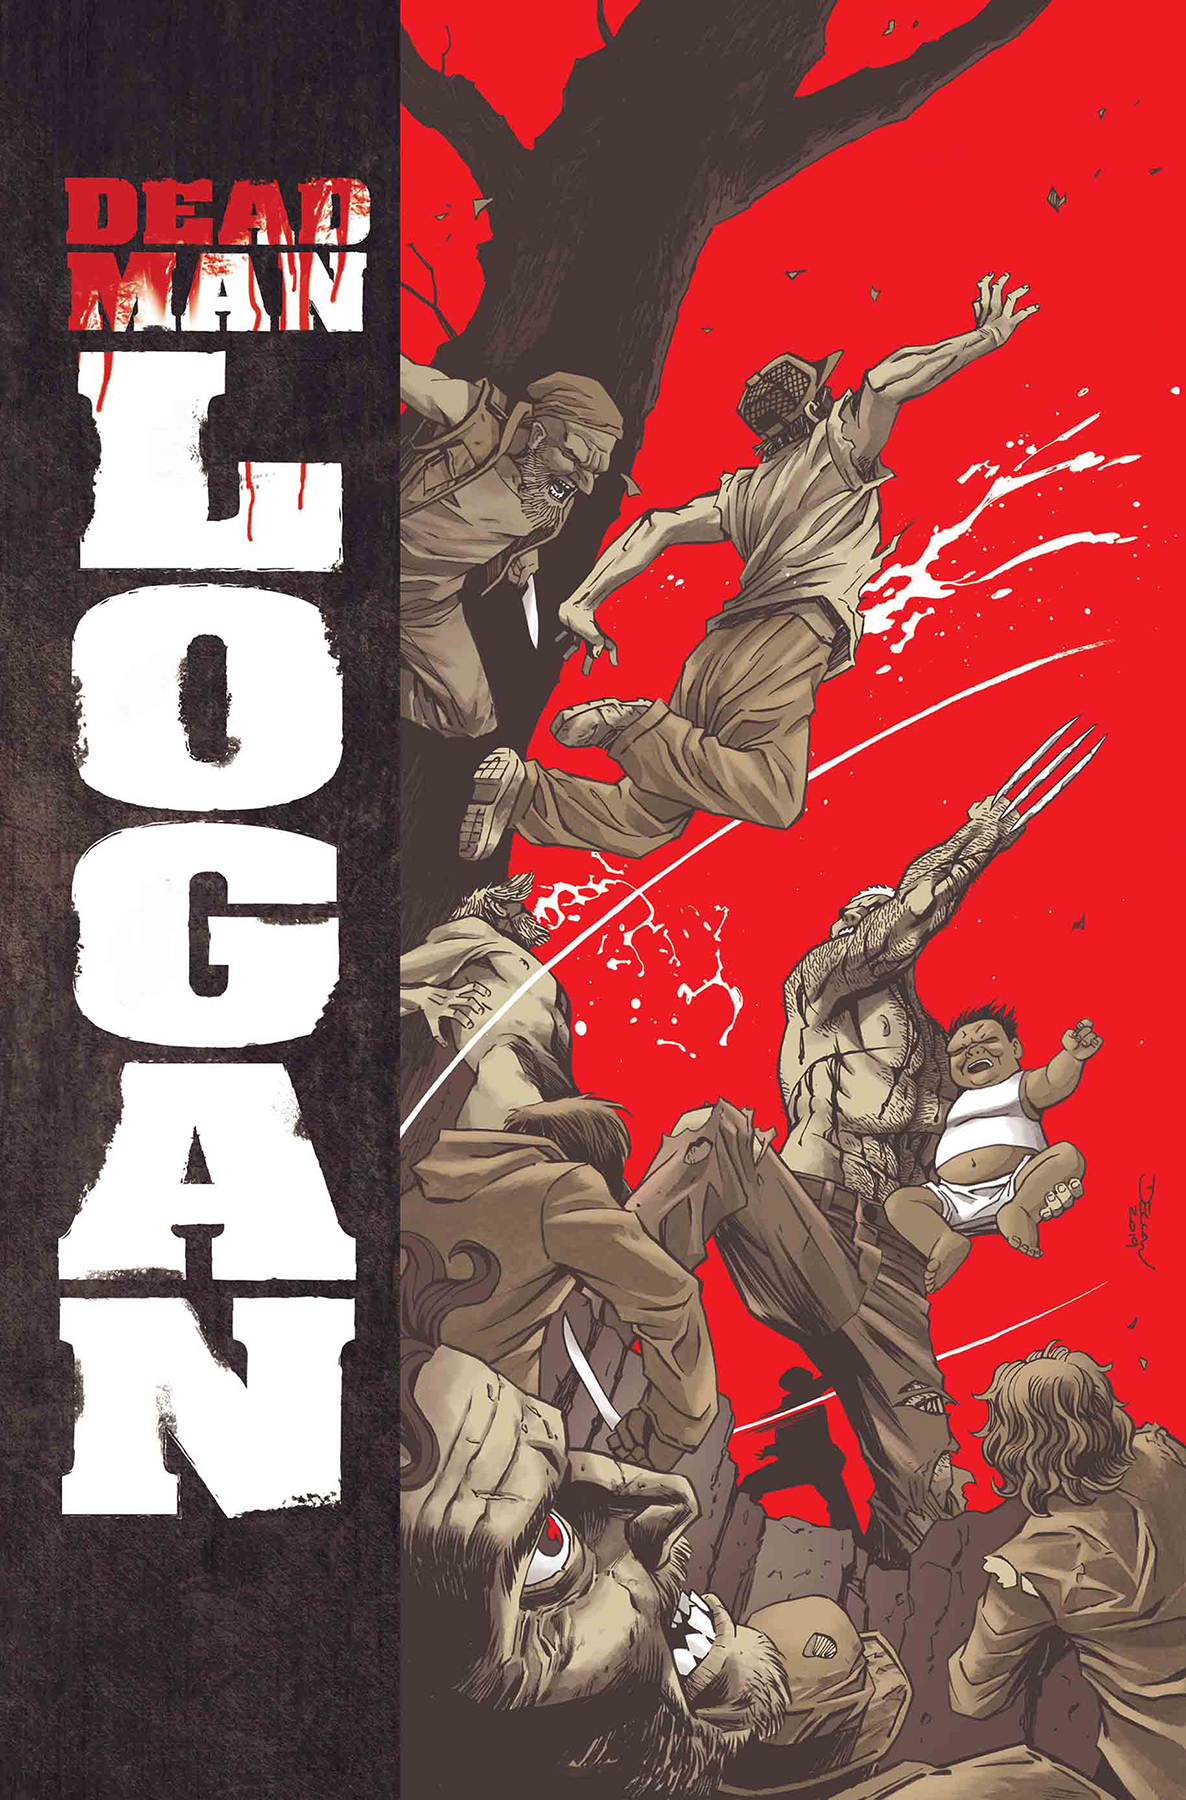 Dead Man Logan No. 8 (8 of 12) (2018 Series)